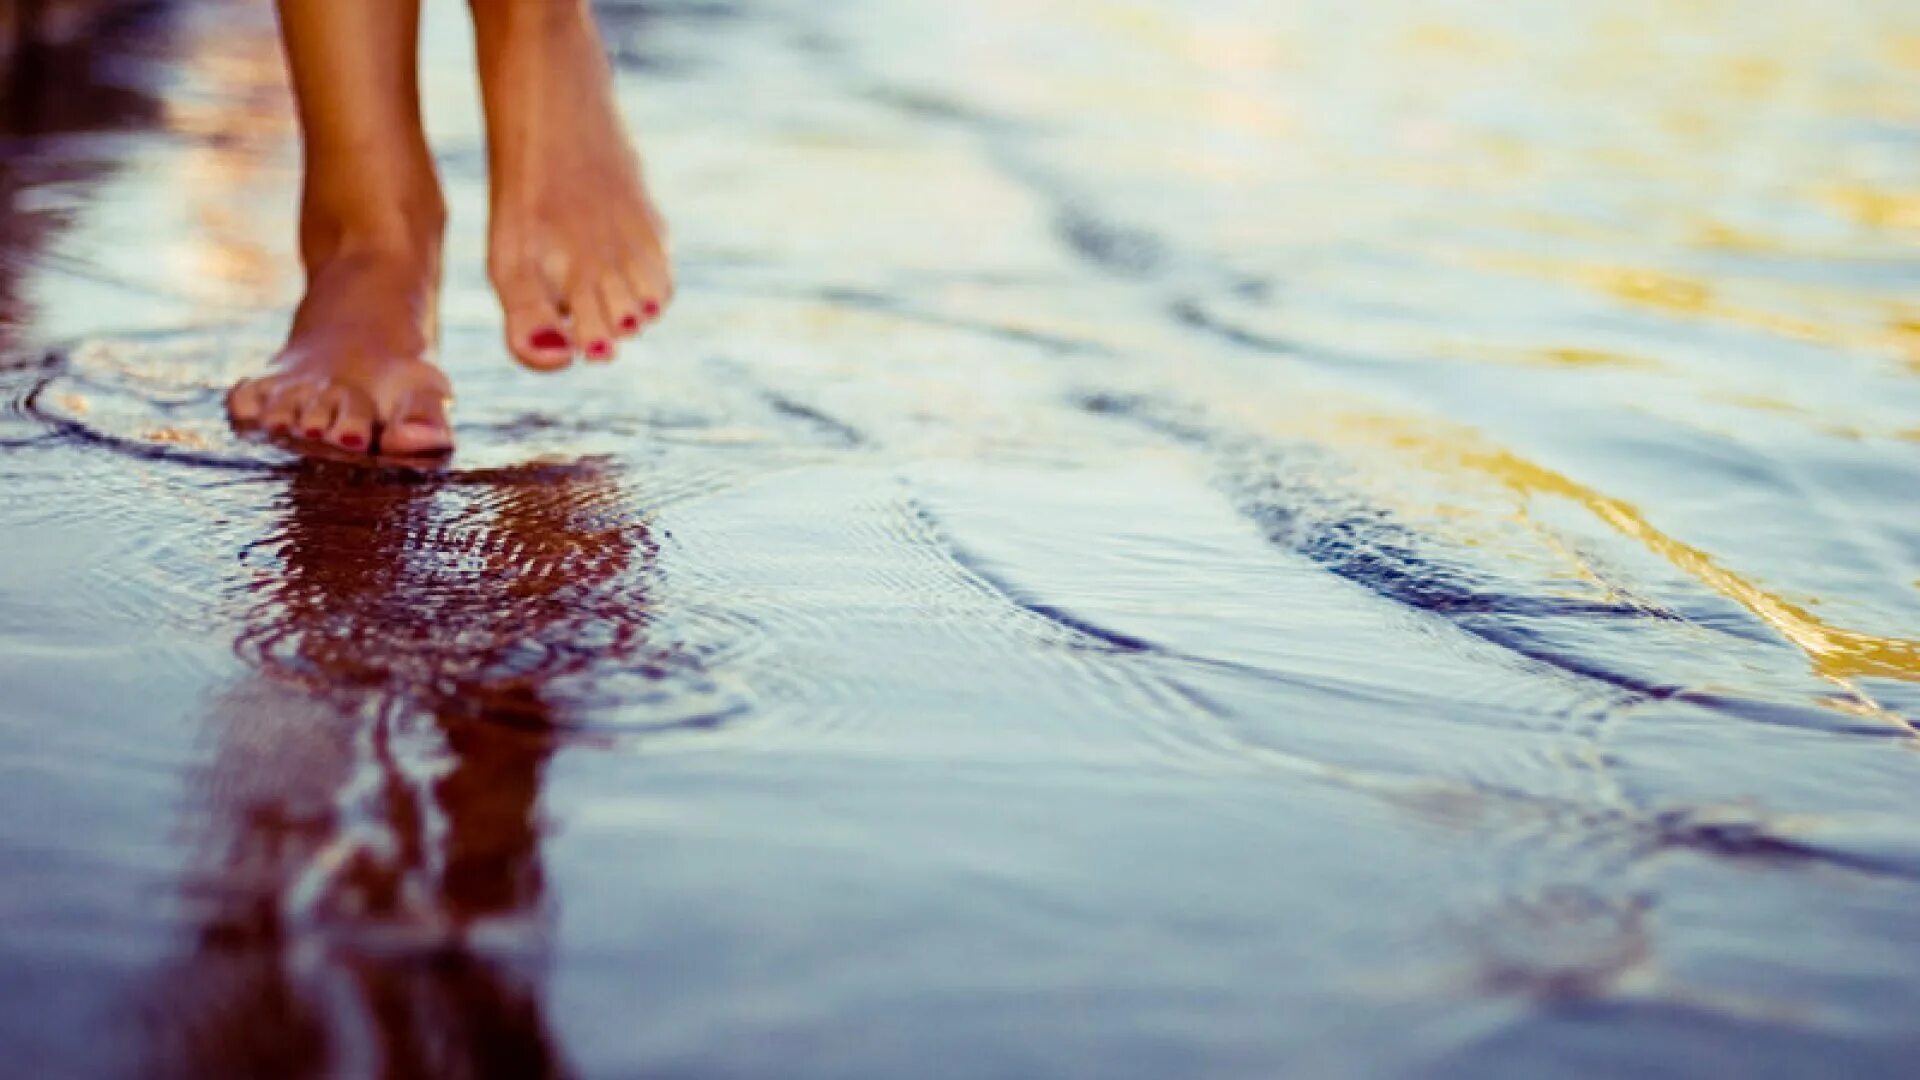 Слушать станет легче. Ноги по воде. Босые ноги в воде. Ноги в луже. Маленькими шагами к счастью.